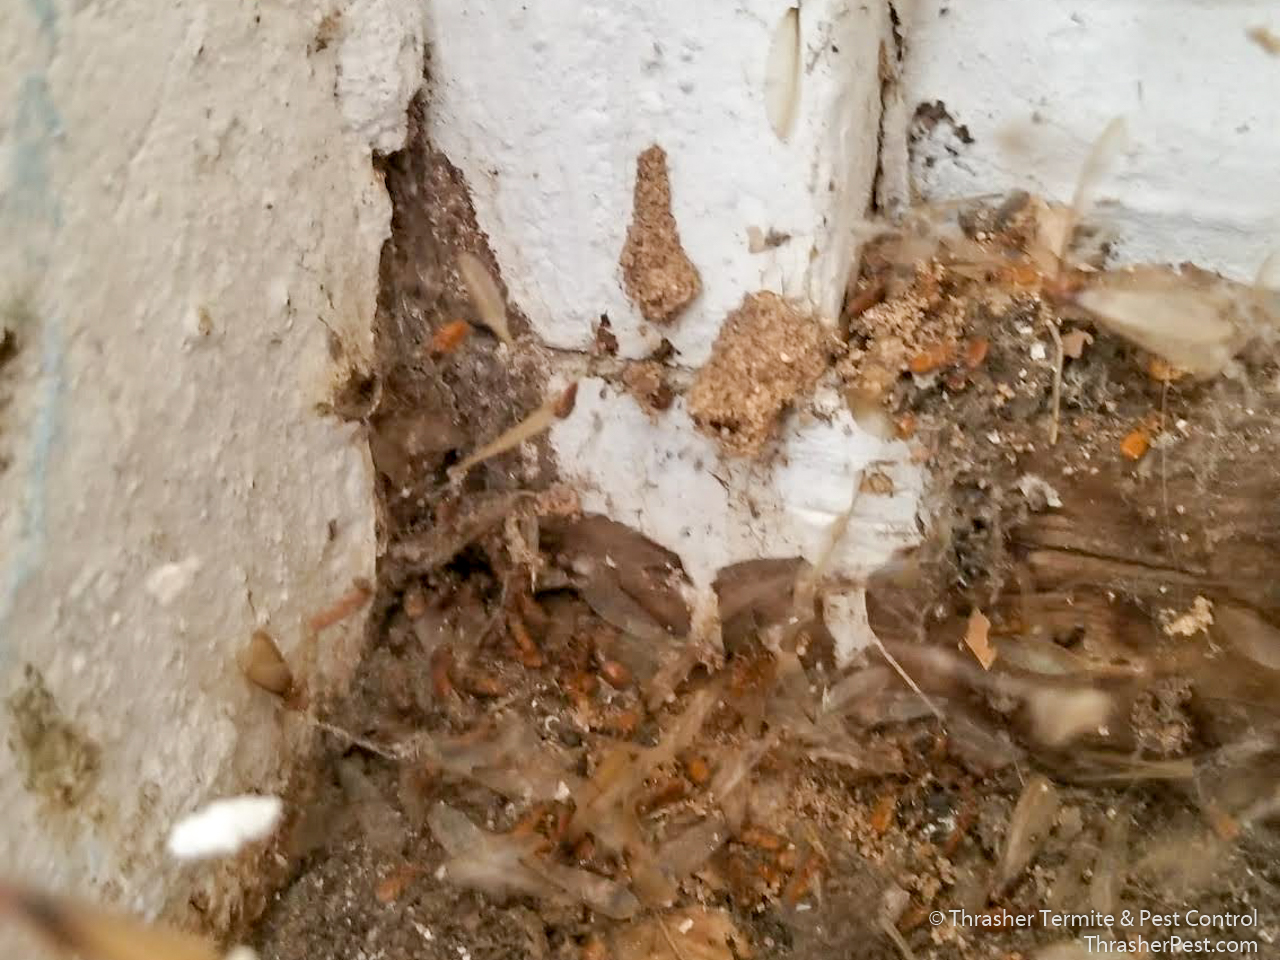 Formosan subterranean termite debris La Mesa 2018